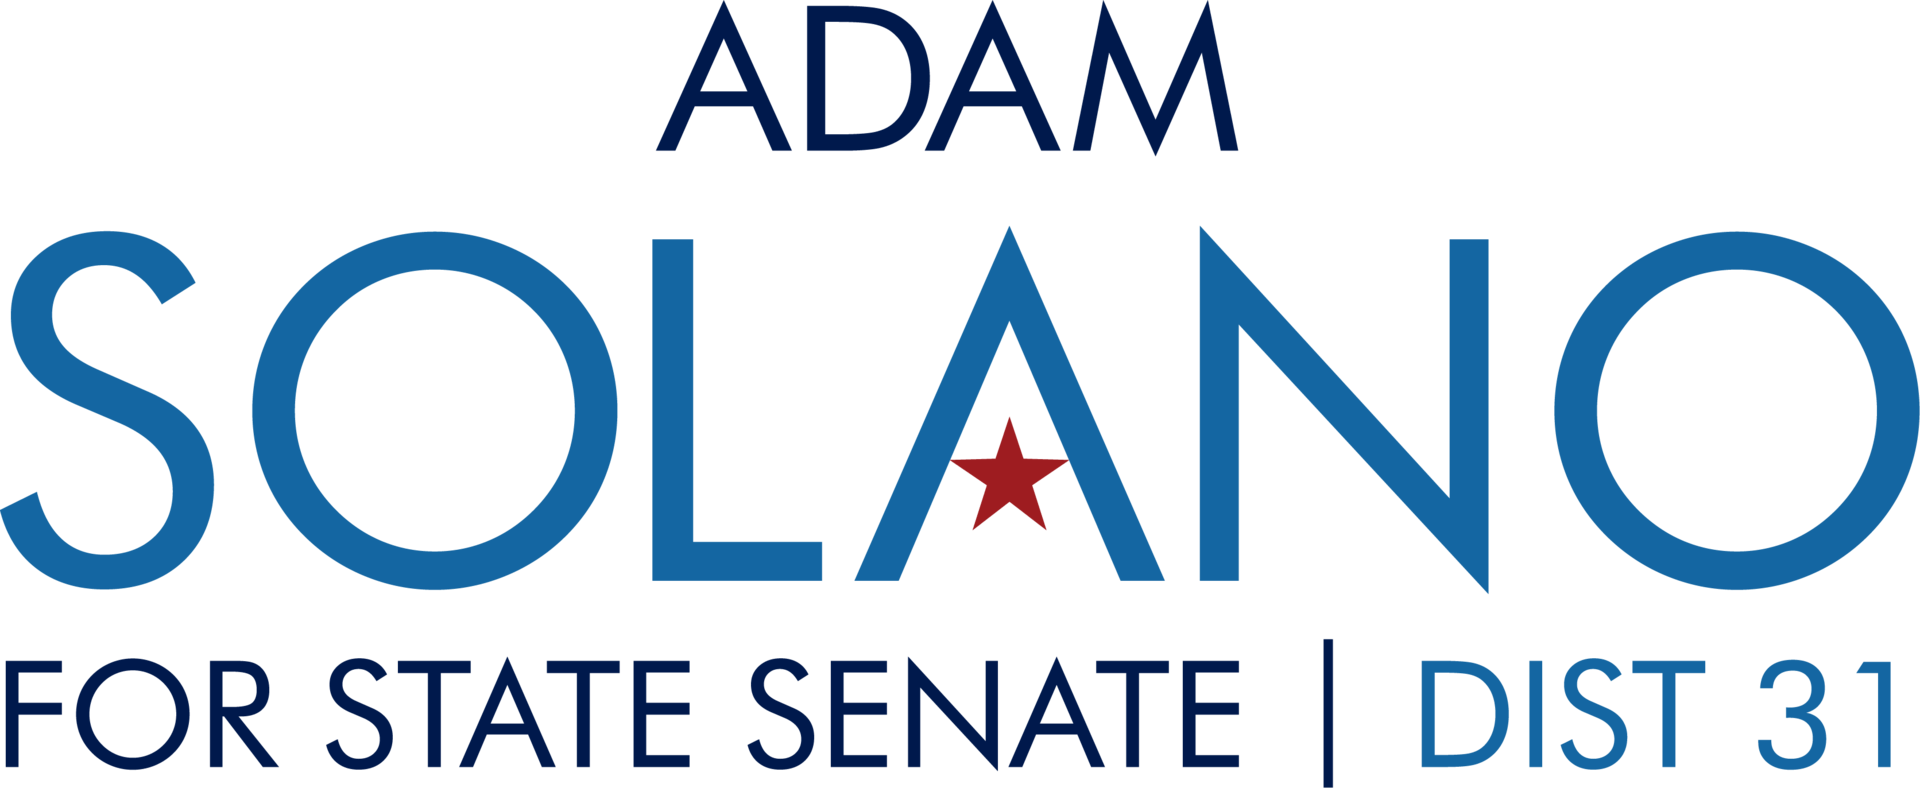 Solano senate logo outlines %281%29